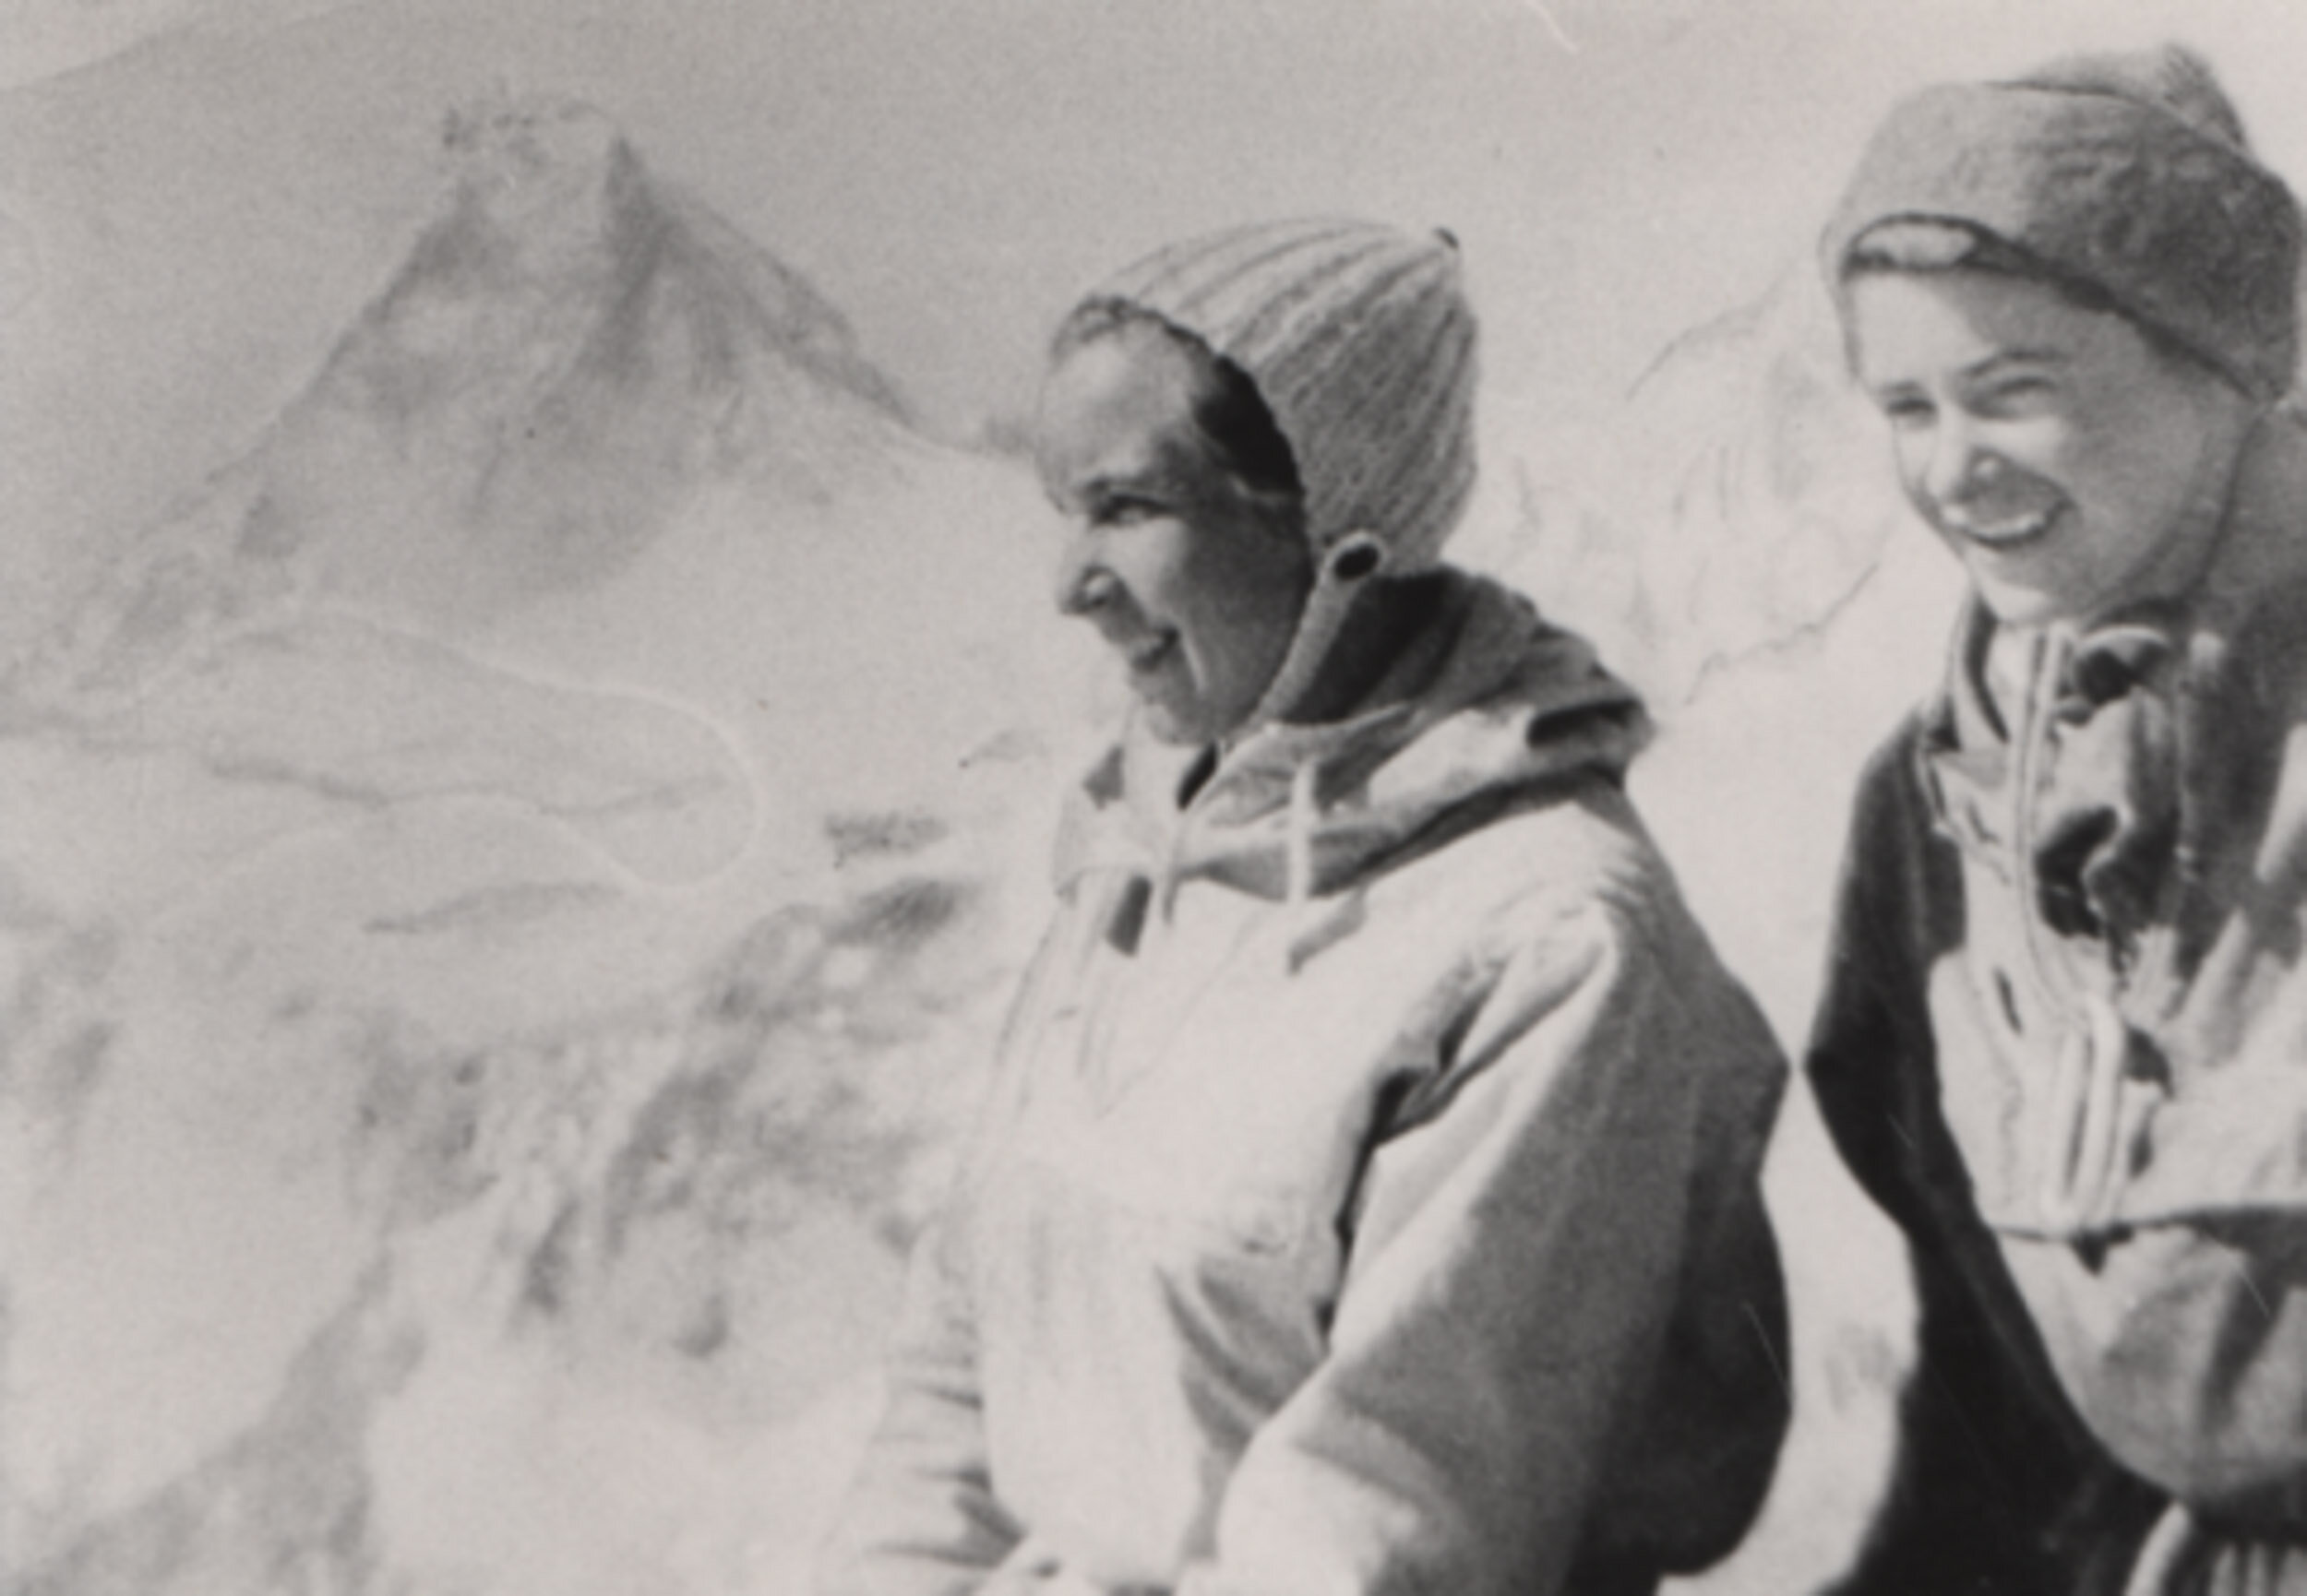 Denise Wilson and Rienetta Leggett in front of the Matterhorn, Switzerland, in 1956